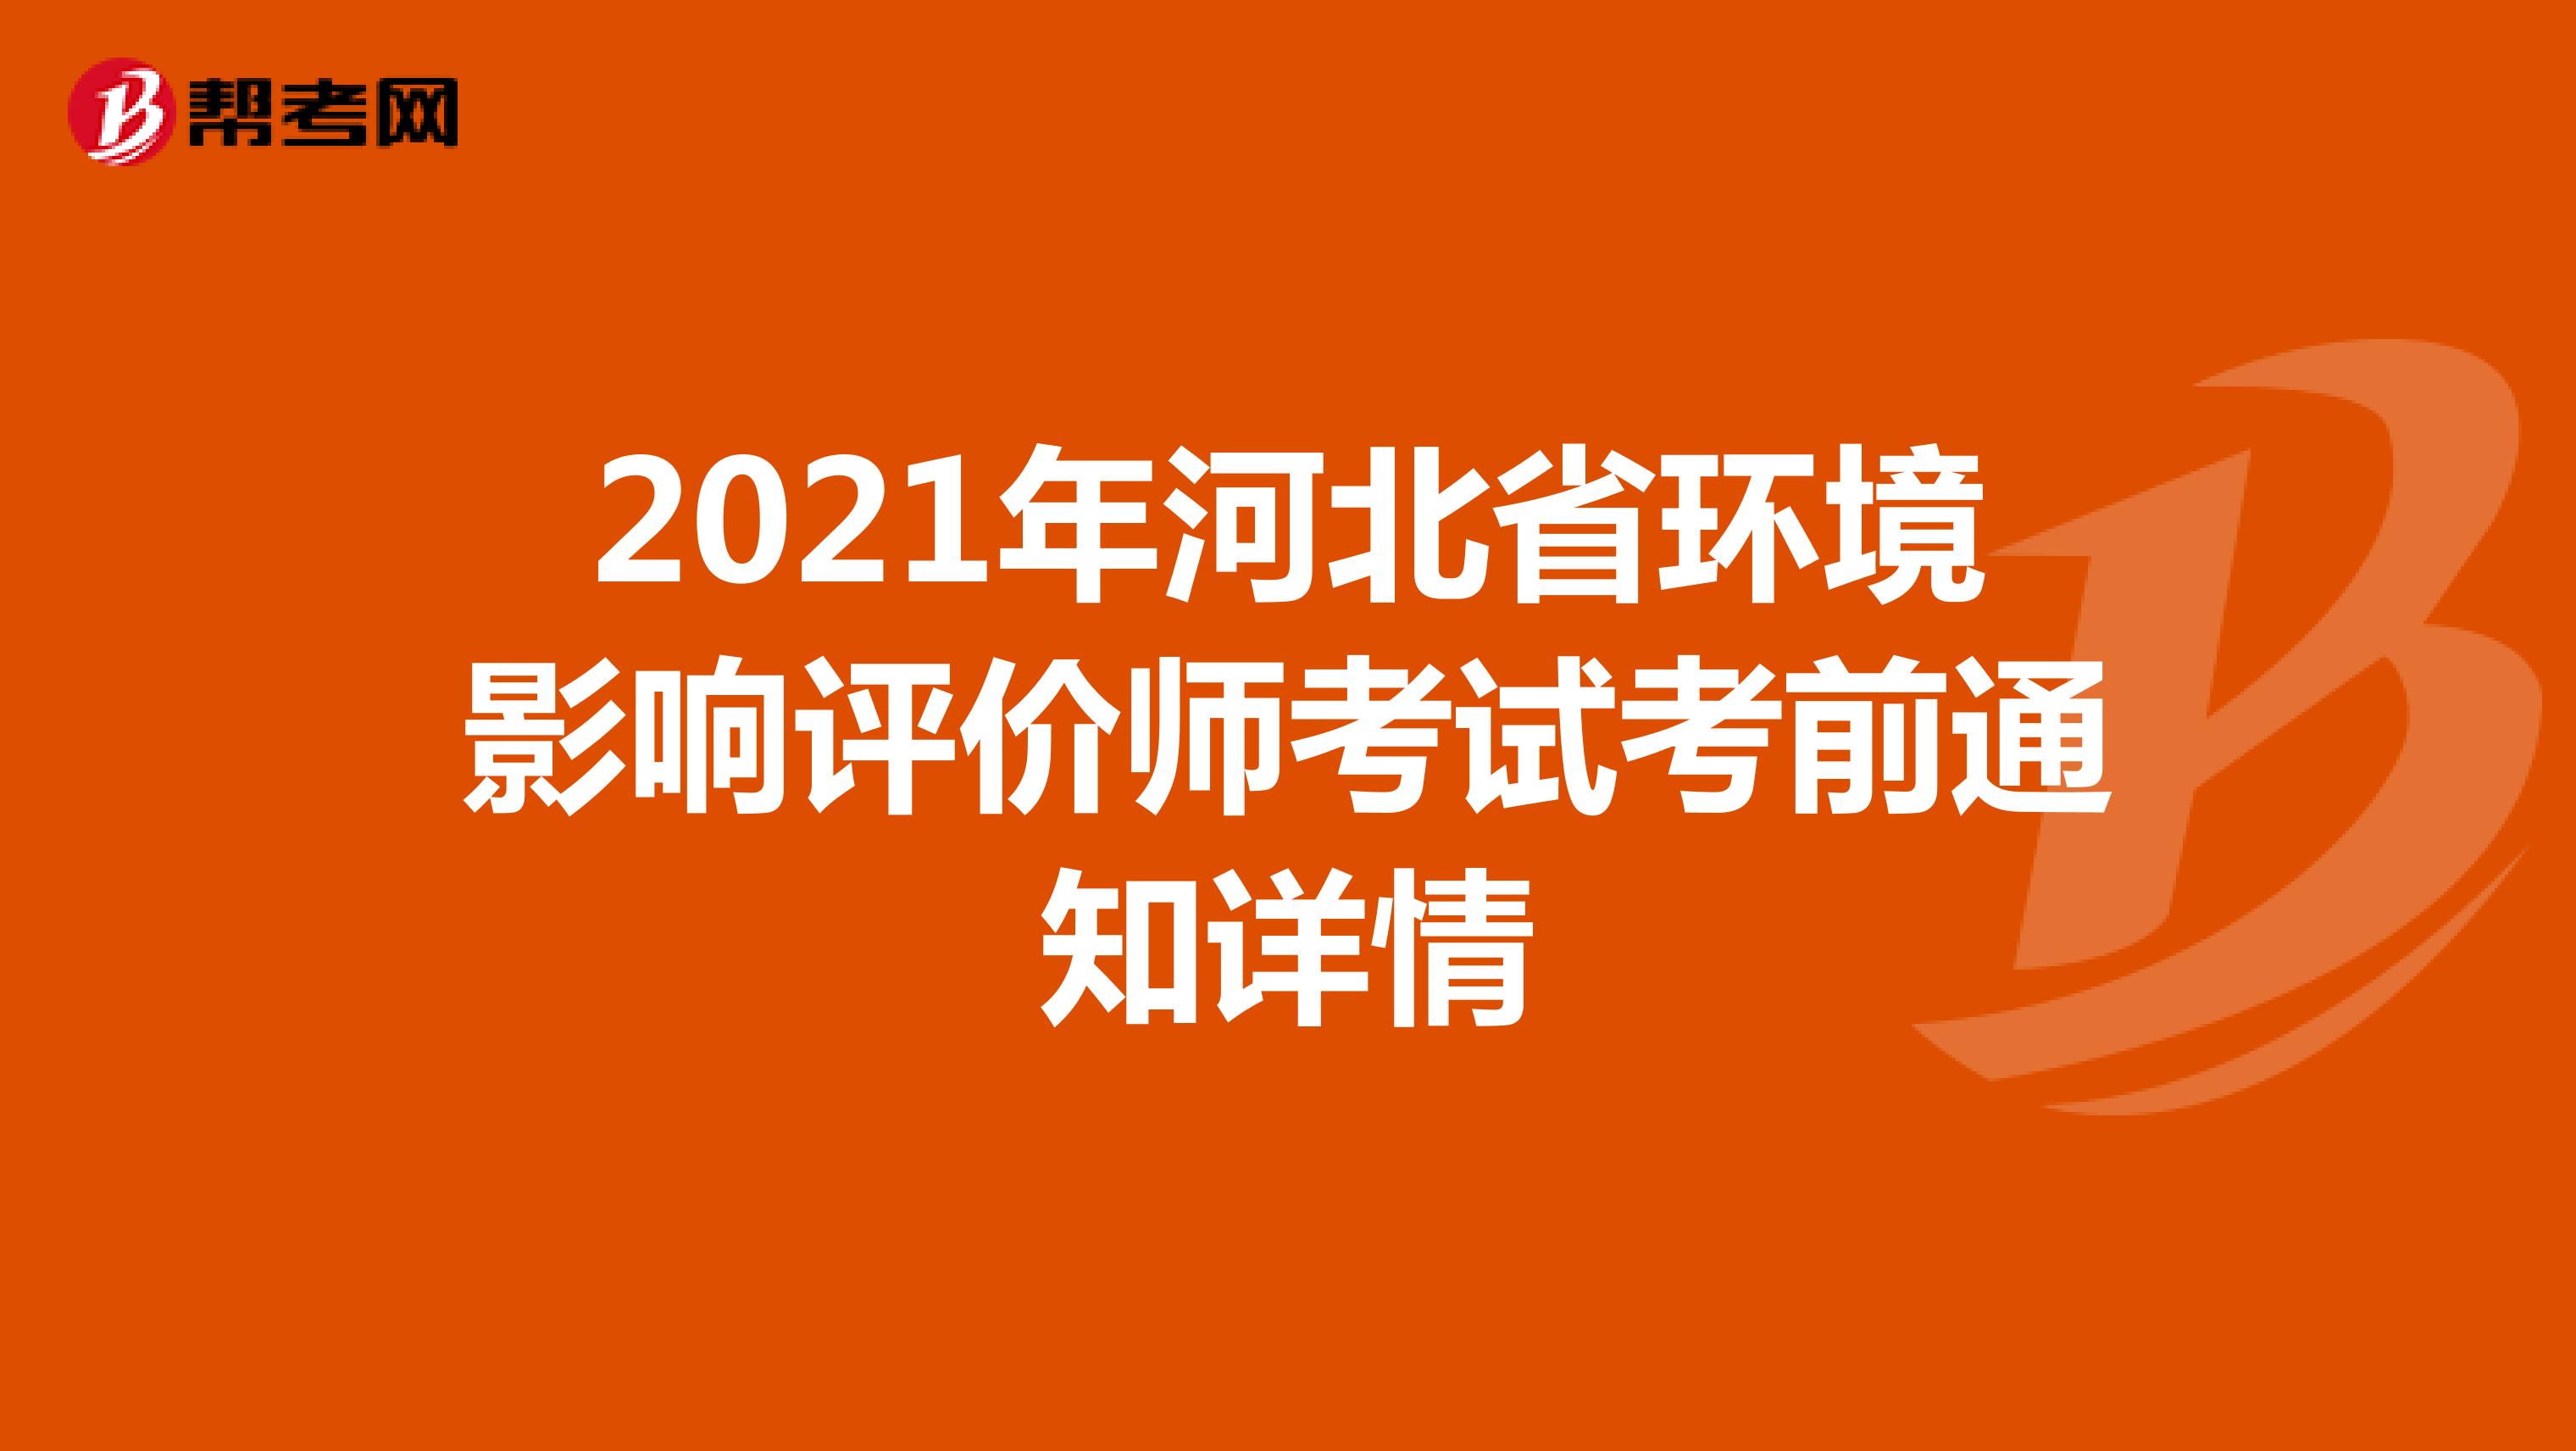 2021年河北省环境影响评价师考试考前通知详情